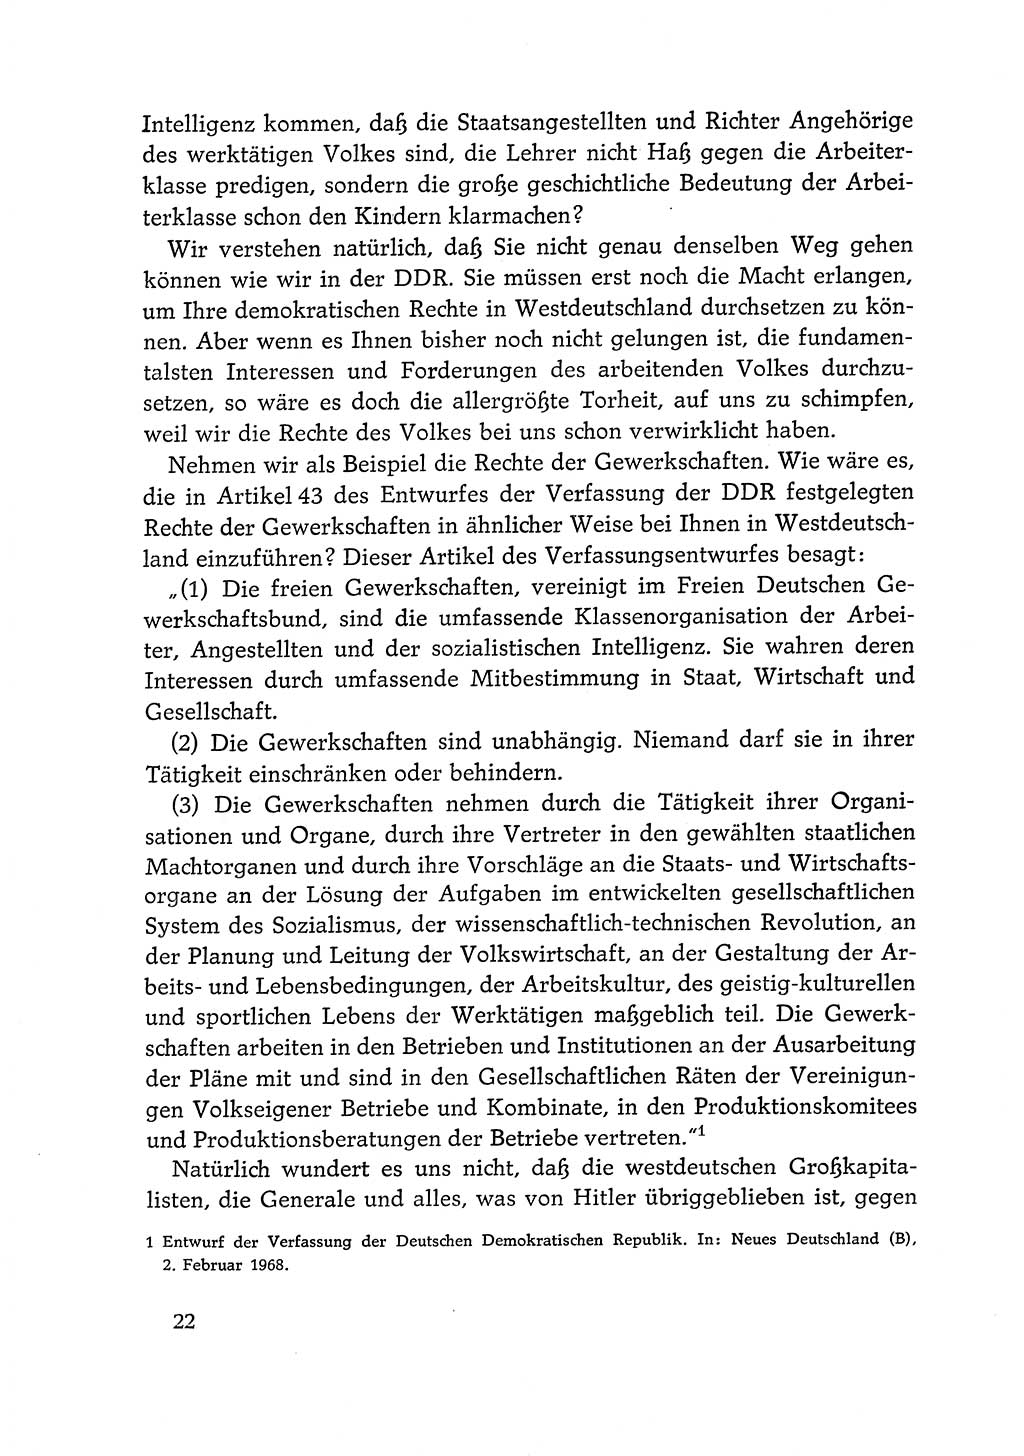 Dokumente der Sozialistischen Einheitspartei Deutschlands (SED) [Deutsche Demokratische Republik (DDR)] 1968-1969, Seite 22 (Dok. SED DDR 1968-1969, S. 22)